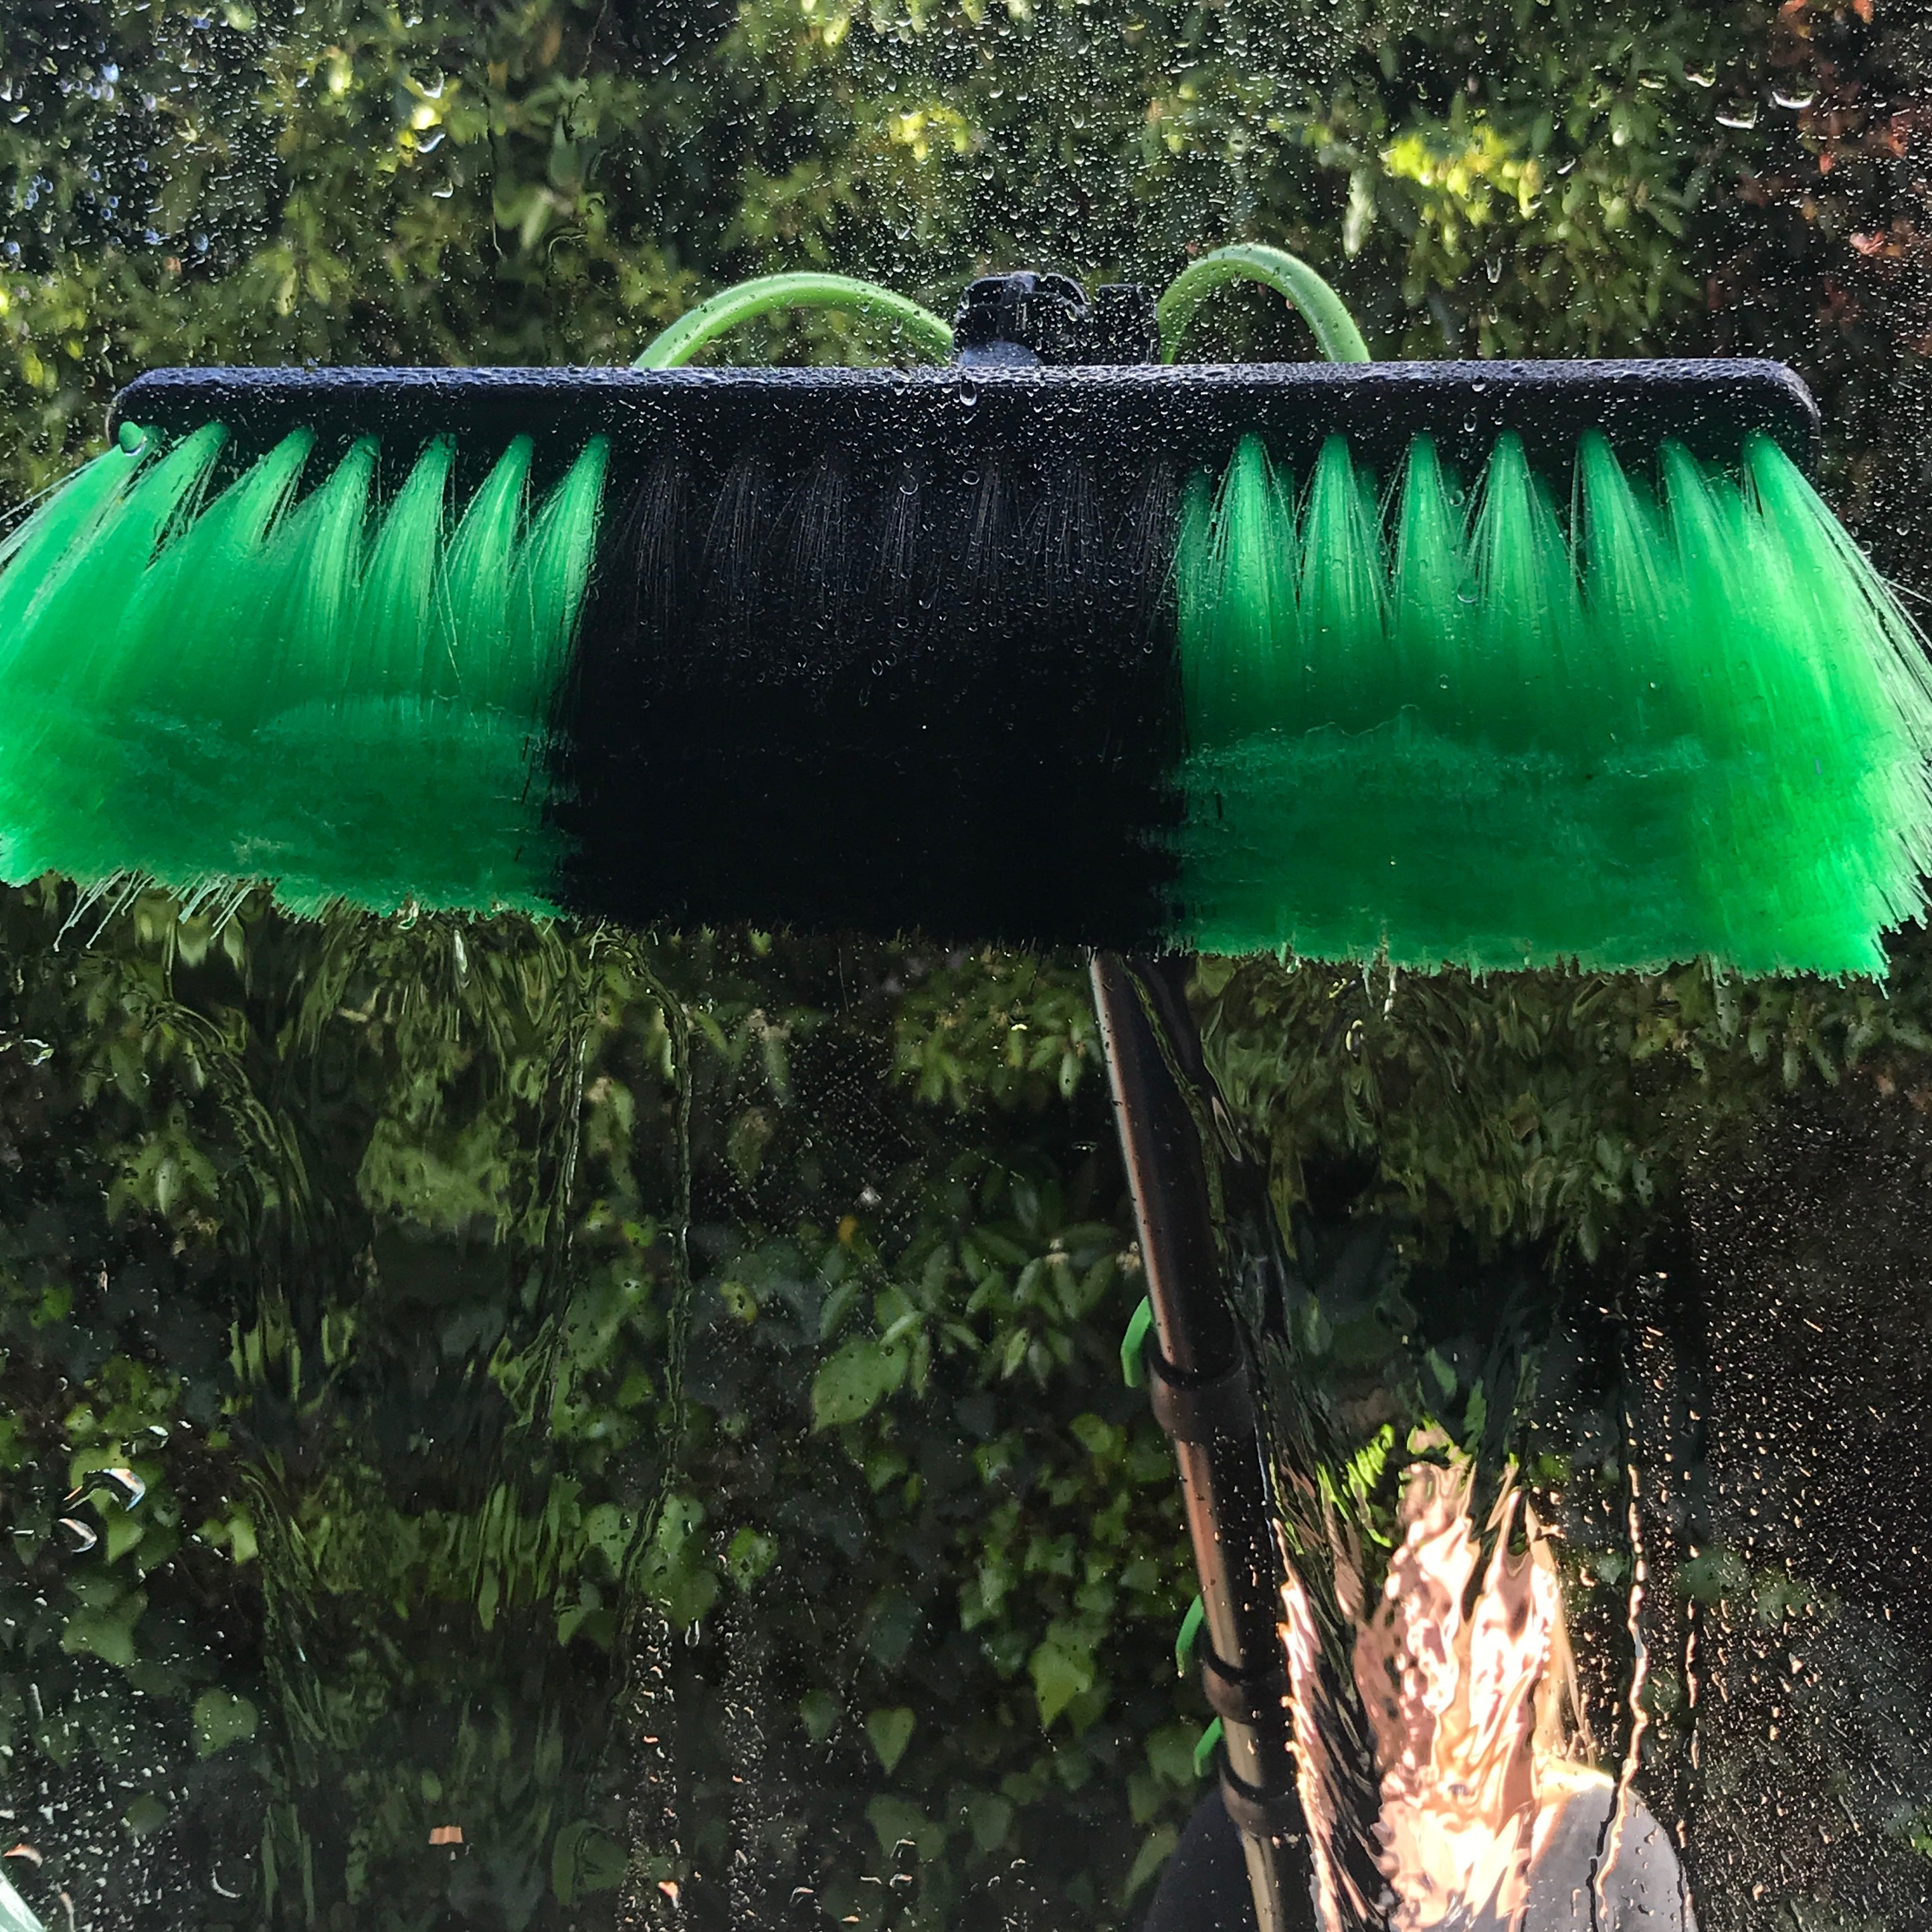 JOYDING Window Washing Kit Cleaning Brush, Water Fed Pole Kit